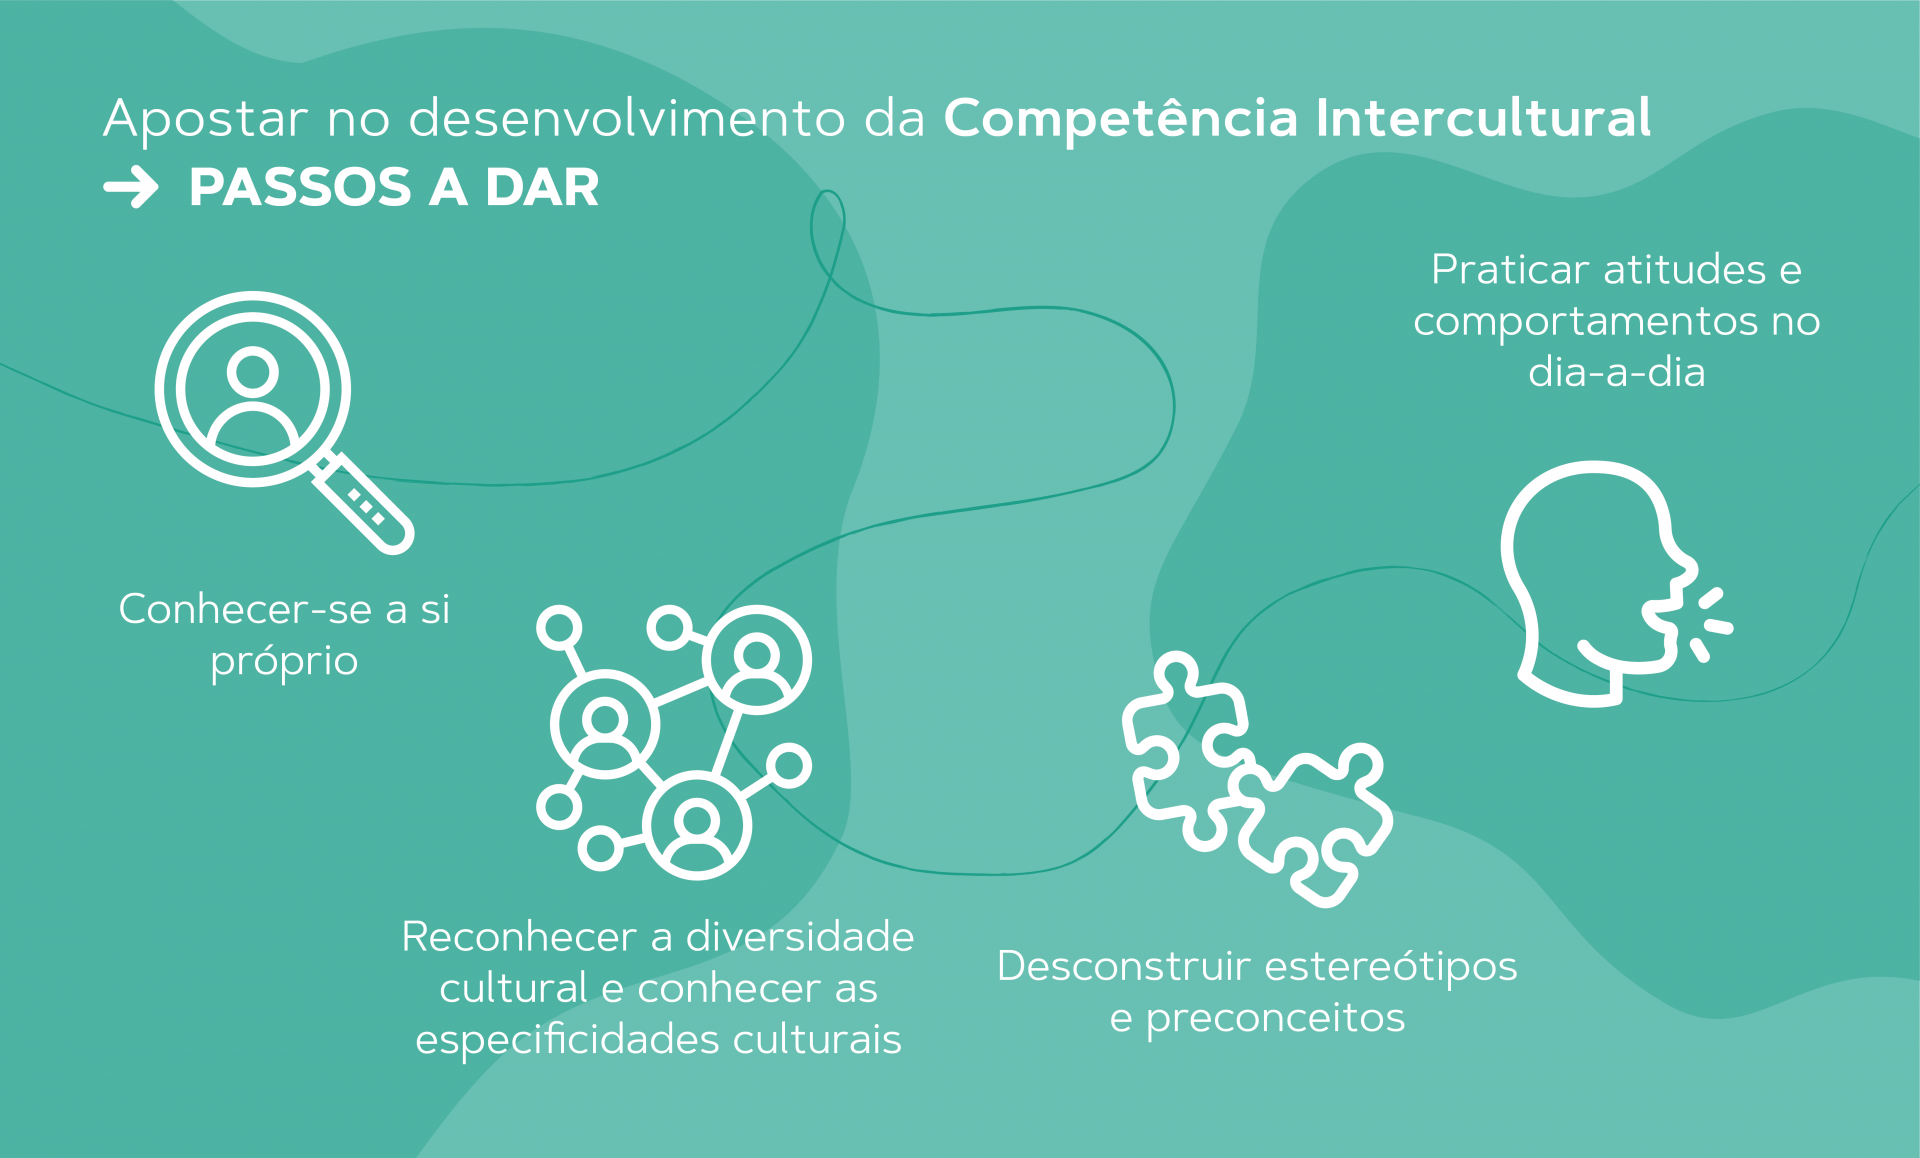 gráfico sobre os passos a dar para o desenvolvimento da c ompetência intercultural